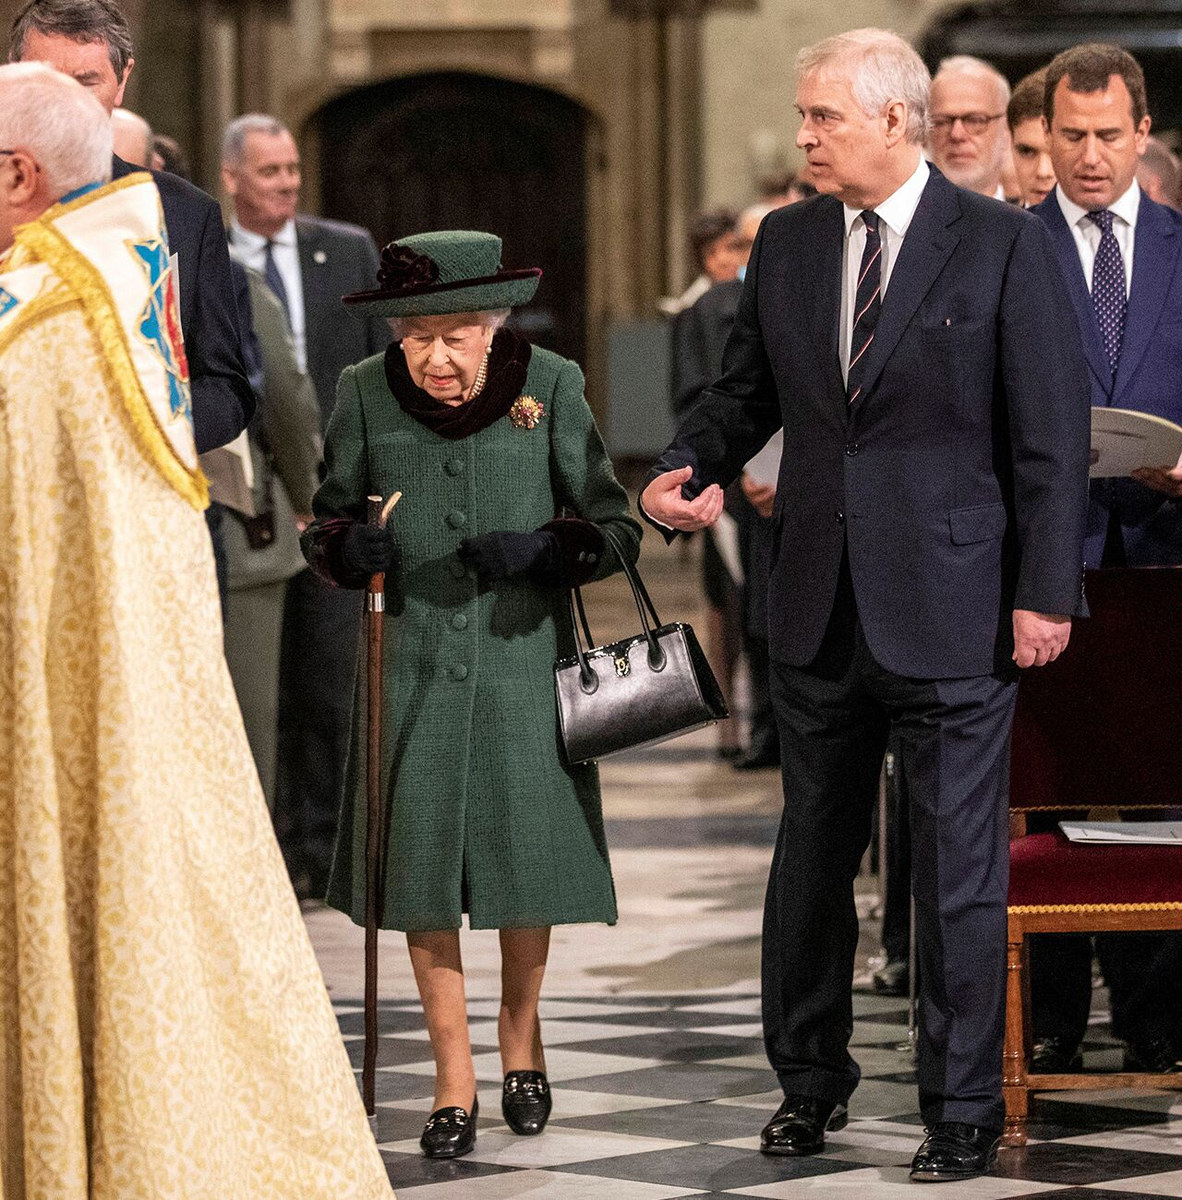 Принц Эндрю сопровождает королеву Елизавету. Фото из интернета